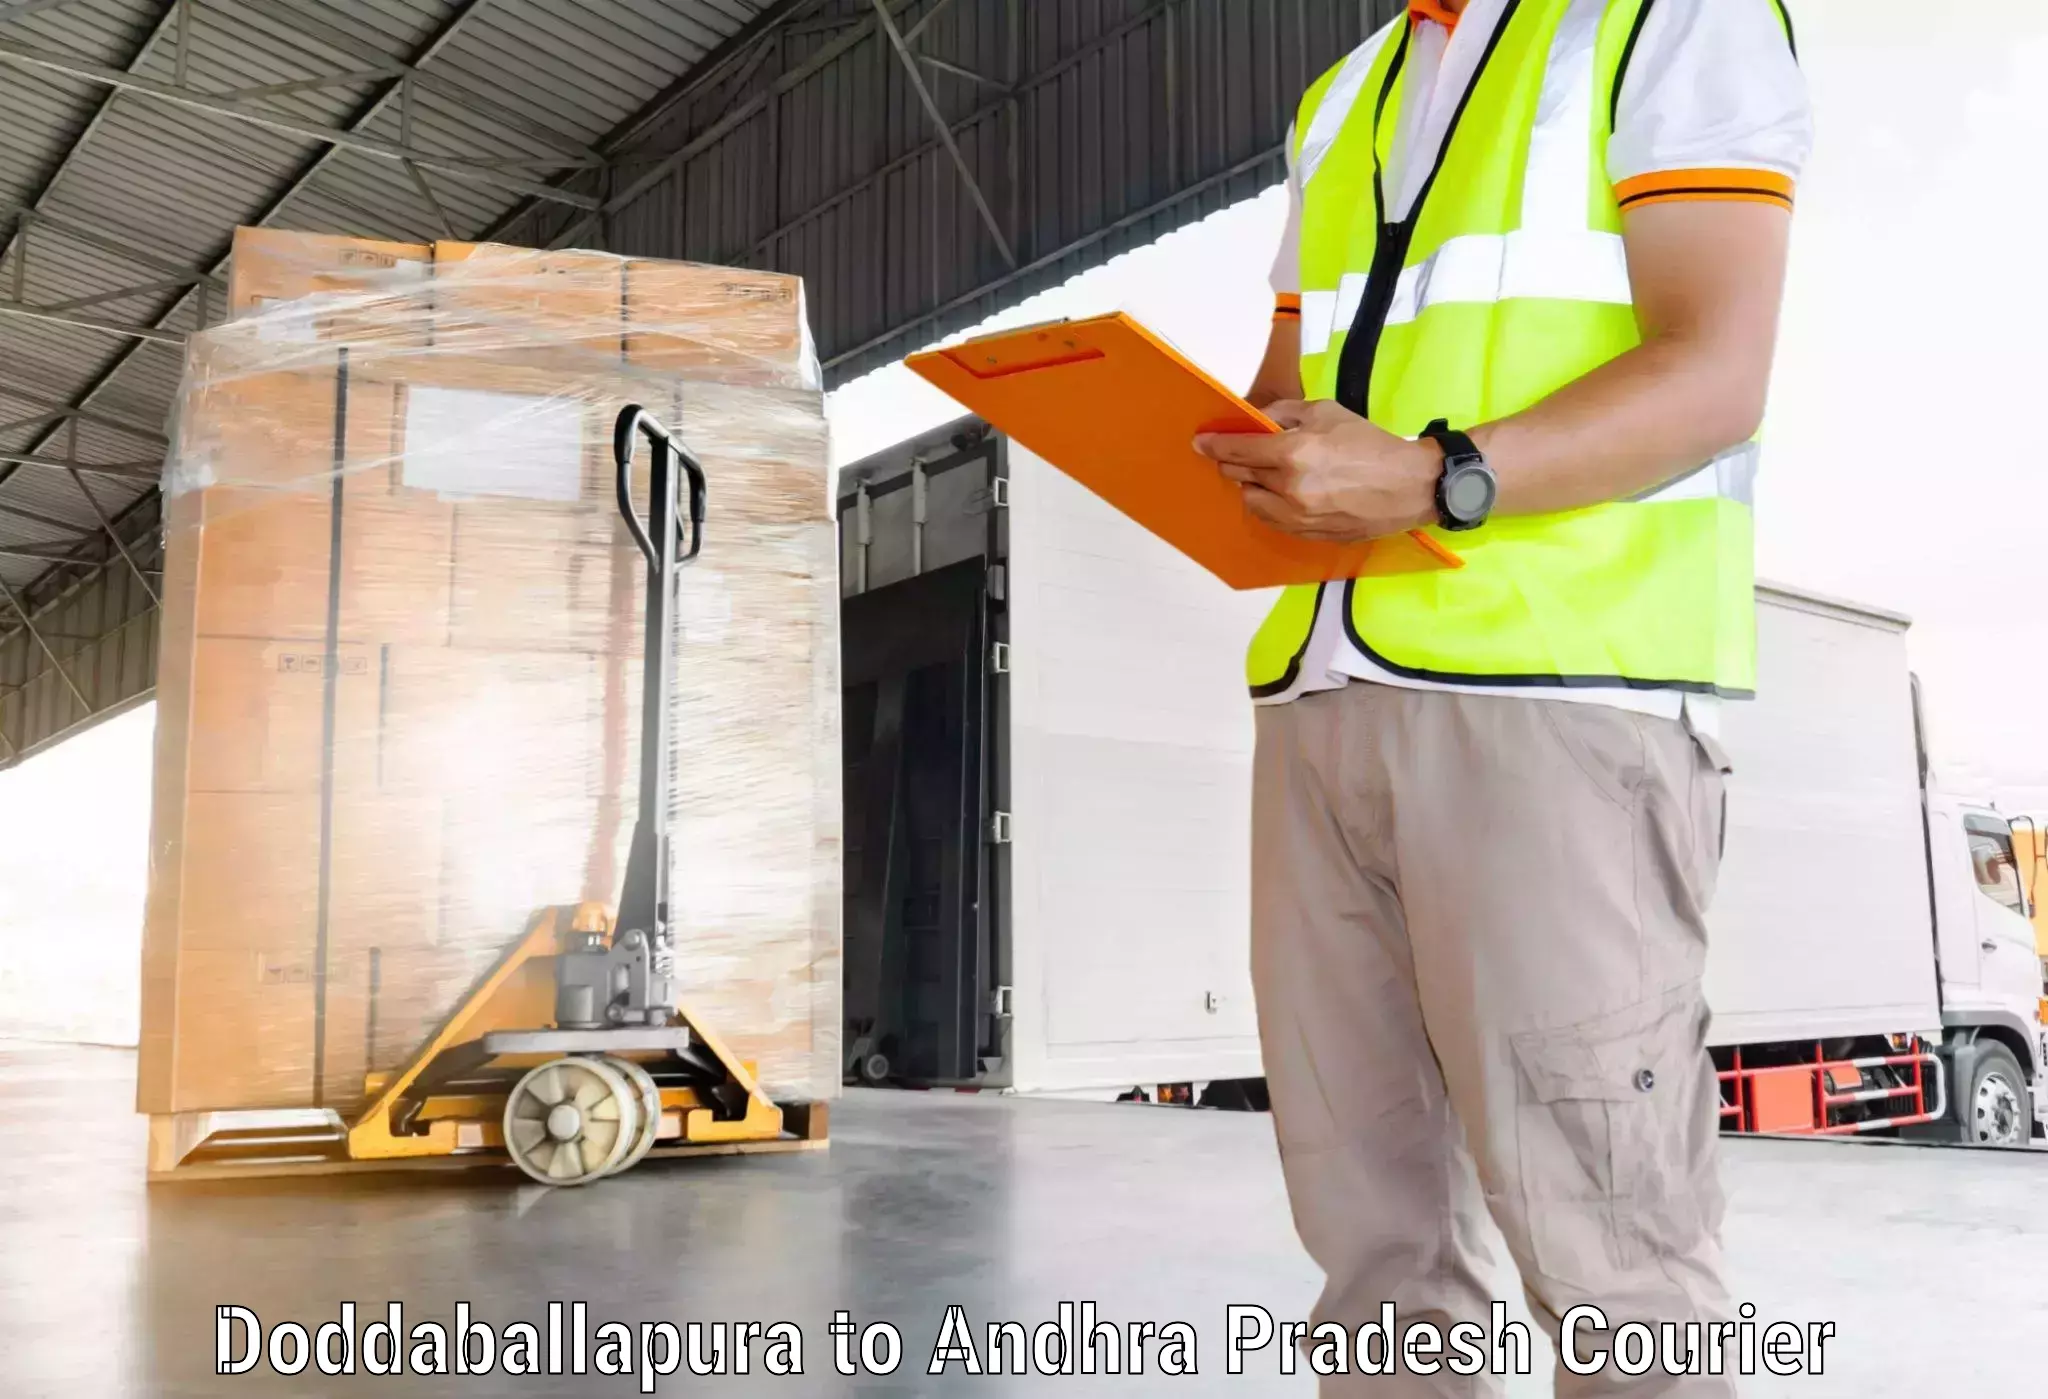 Global parcel delivery Doddaballapura to Srungavarapukota SKota